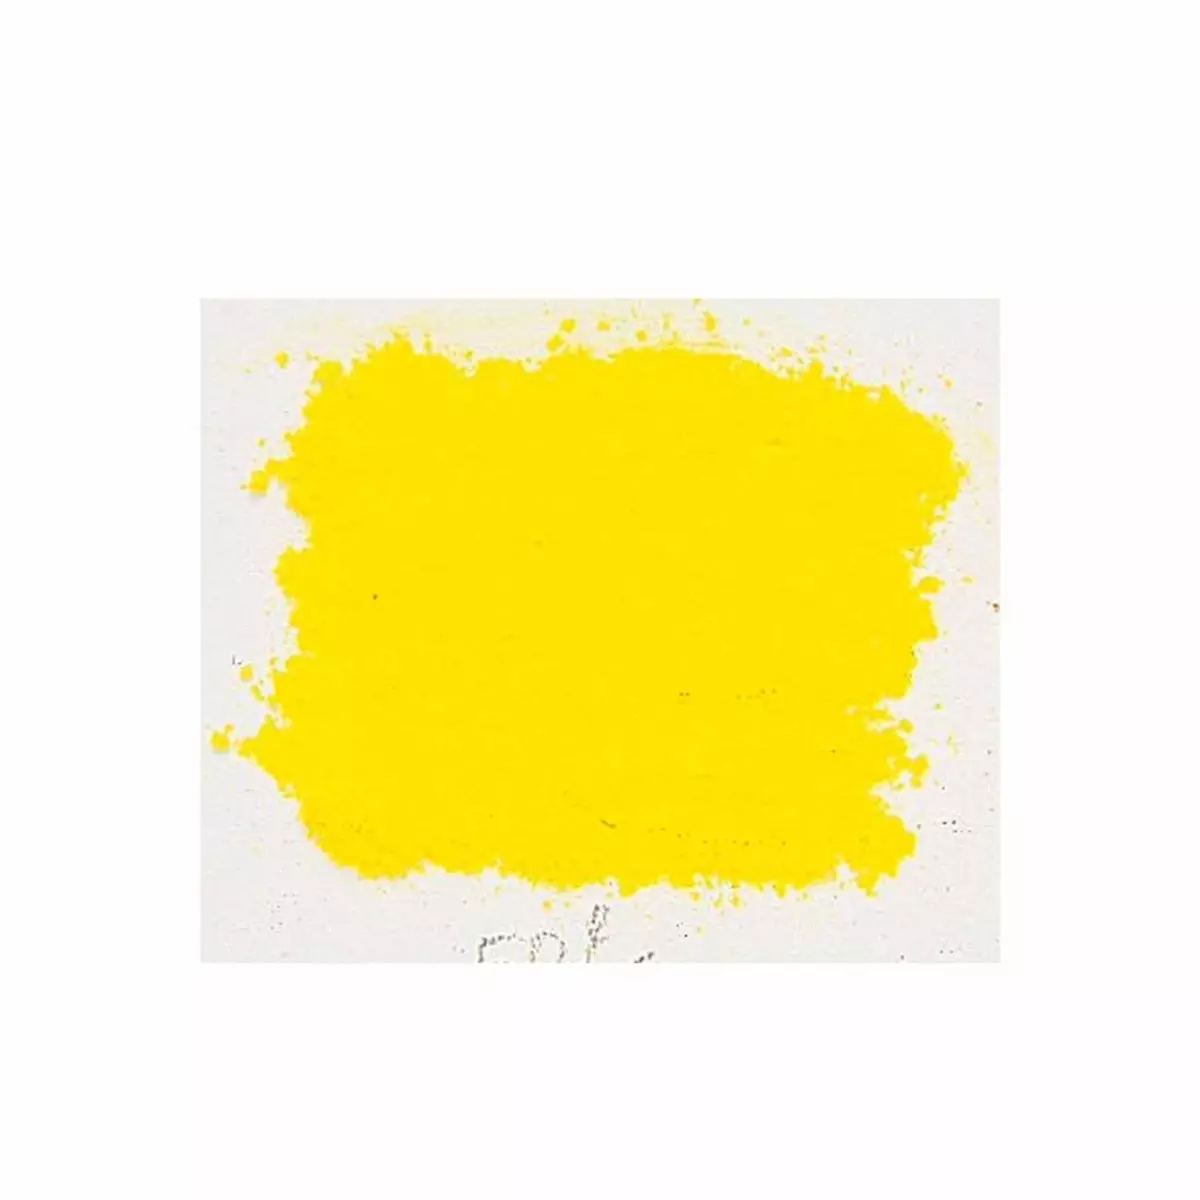  Pigment pour création de peinture - pot 100 g - Jaune citron